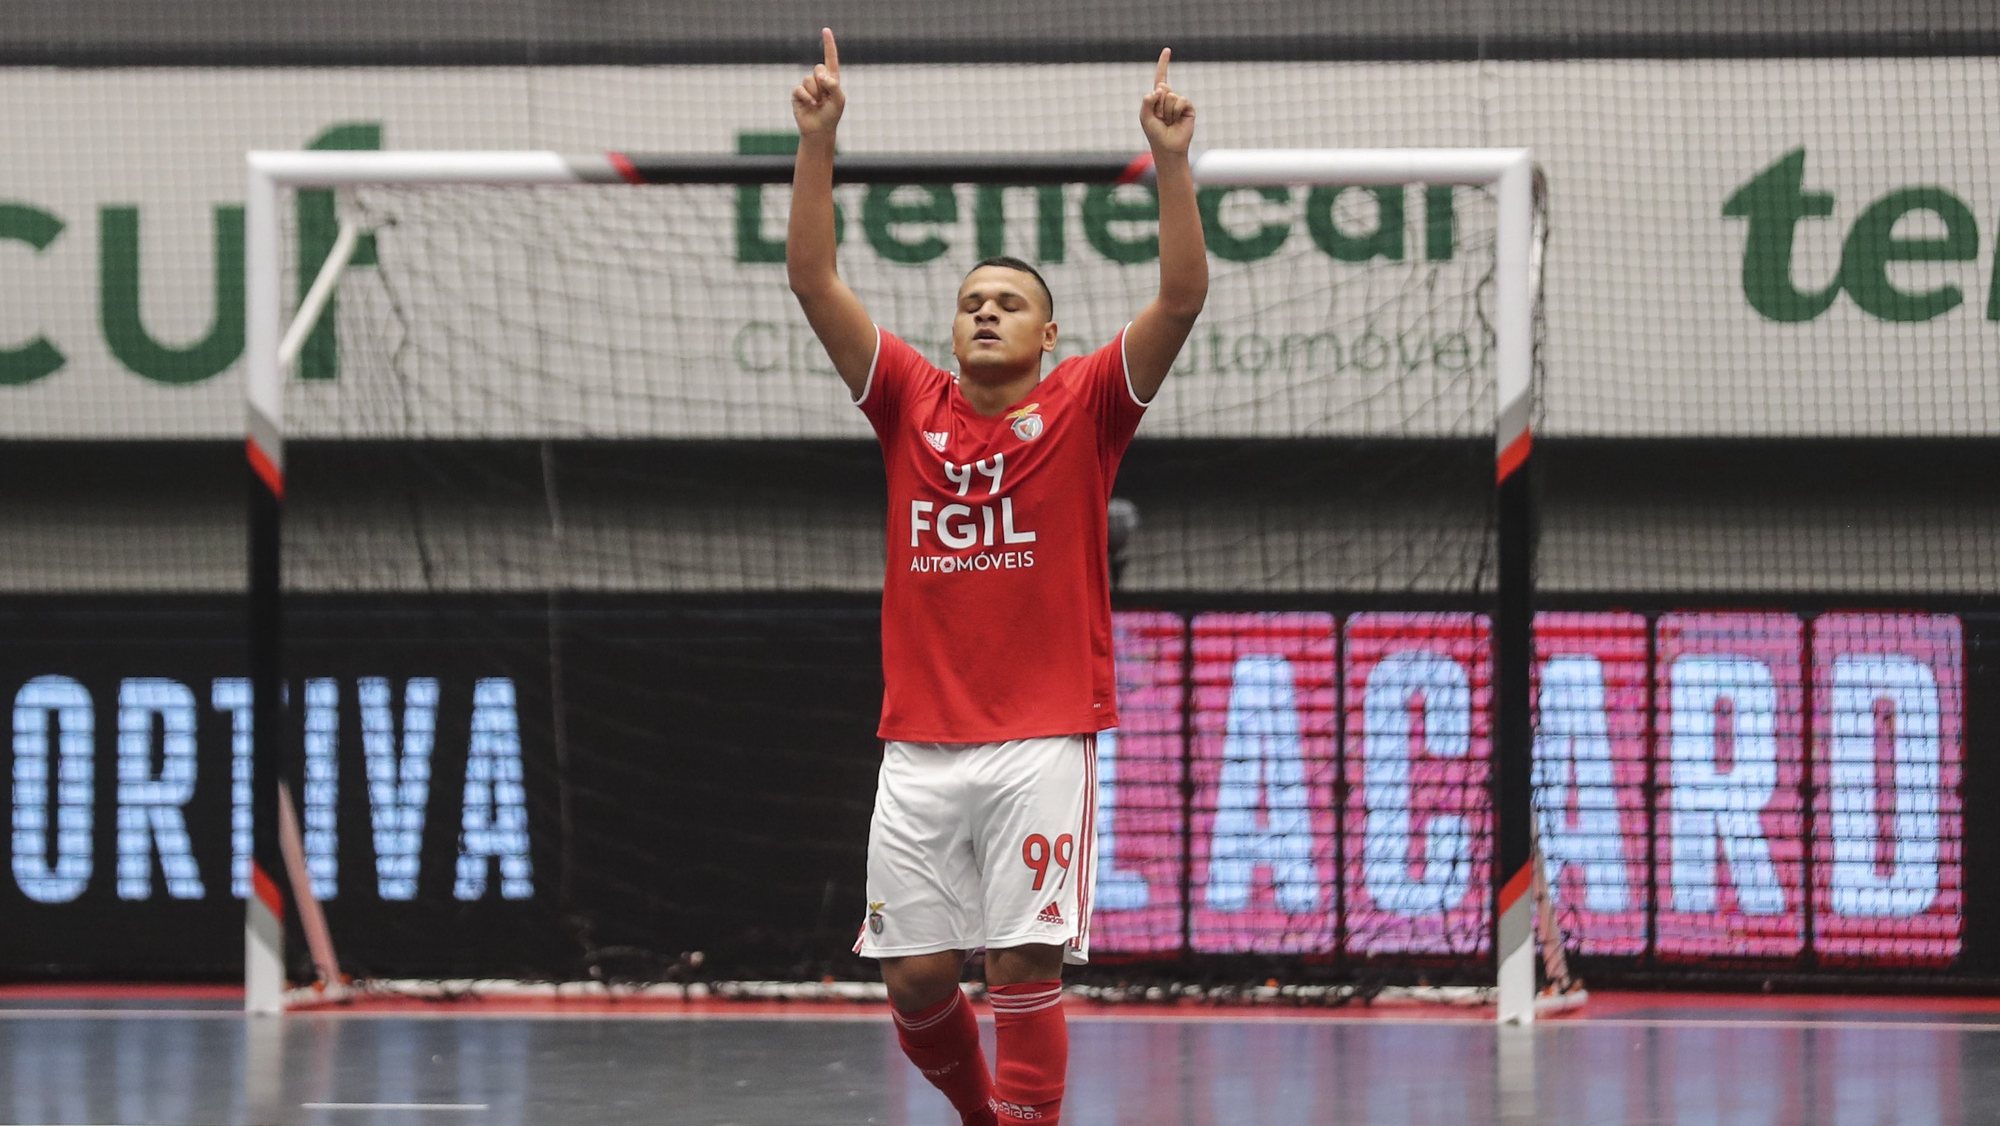 O jogador do Benfica Jacaré festeja após marcar o seu segundo golo ao Sporting durante o jogo da 9.ª jornada da Liga Portuguesa de Futsal, disputado esta noite no Pavilhão João Rocha em Lisboa, 21 de novembro de 2021. MIGUEL A. LOPES/LUSA